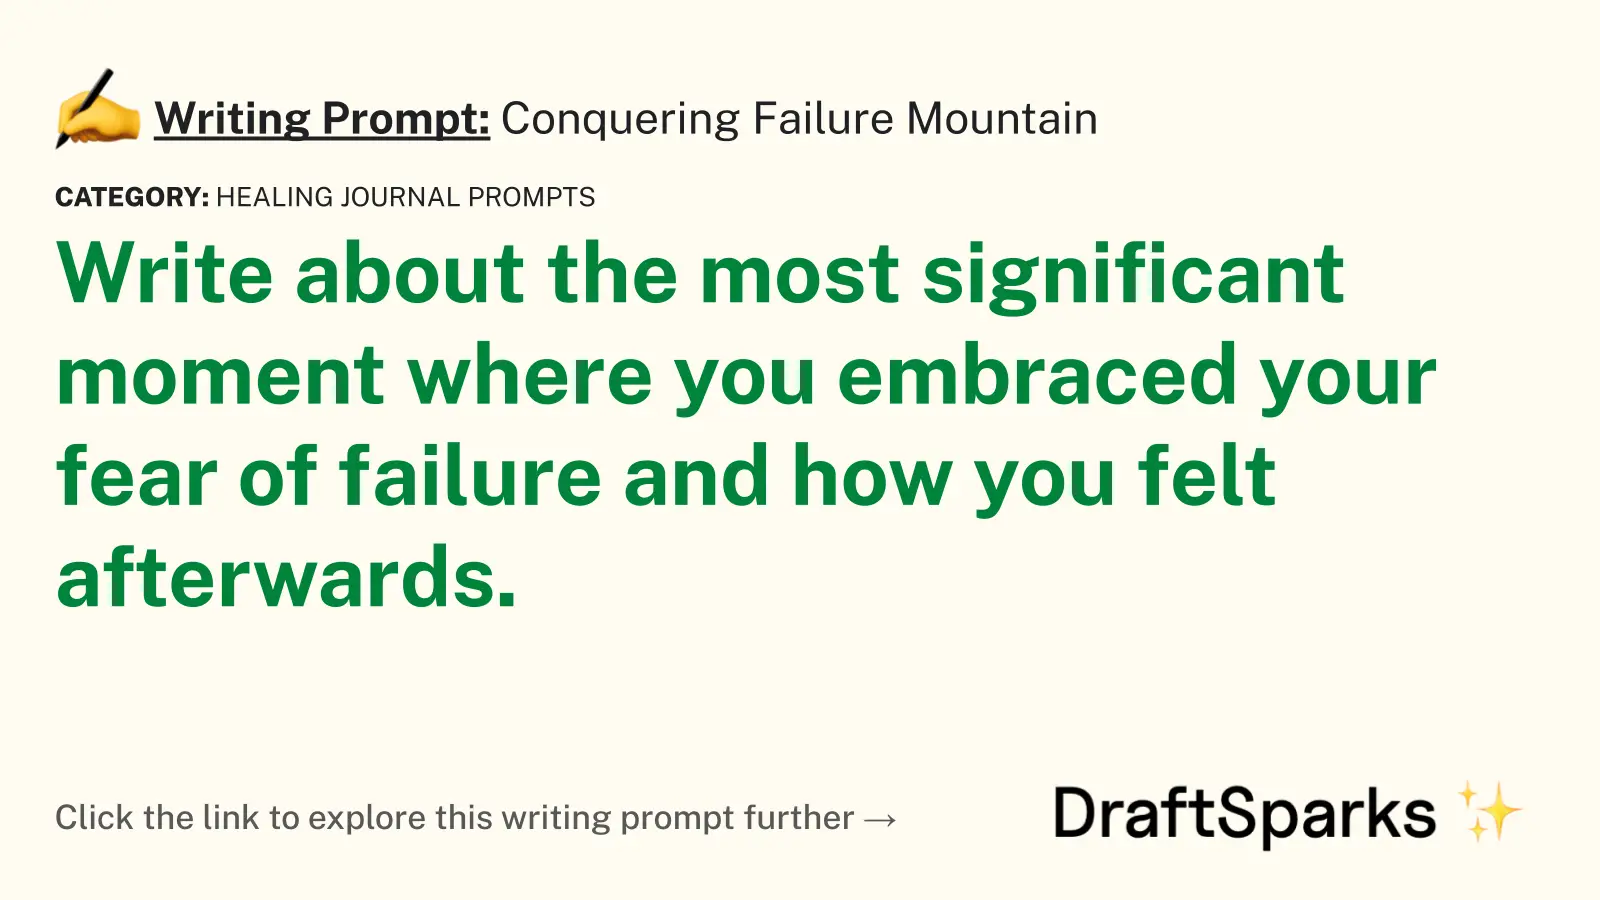 Conquering Failure Mountain